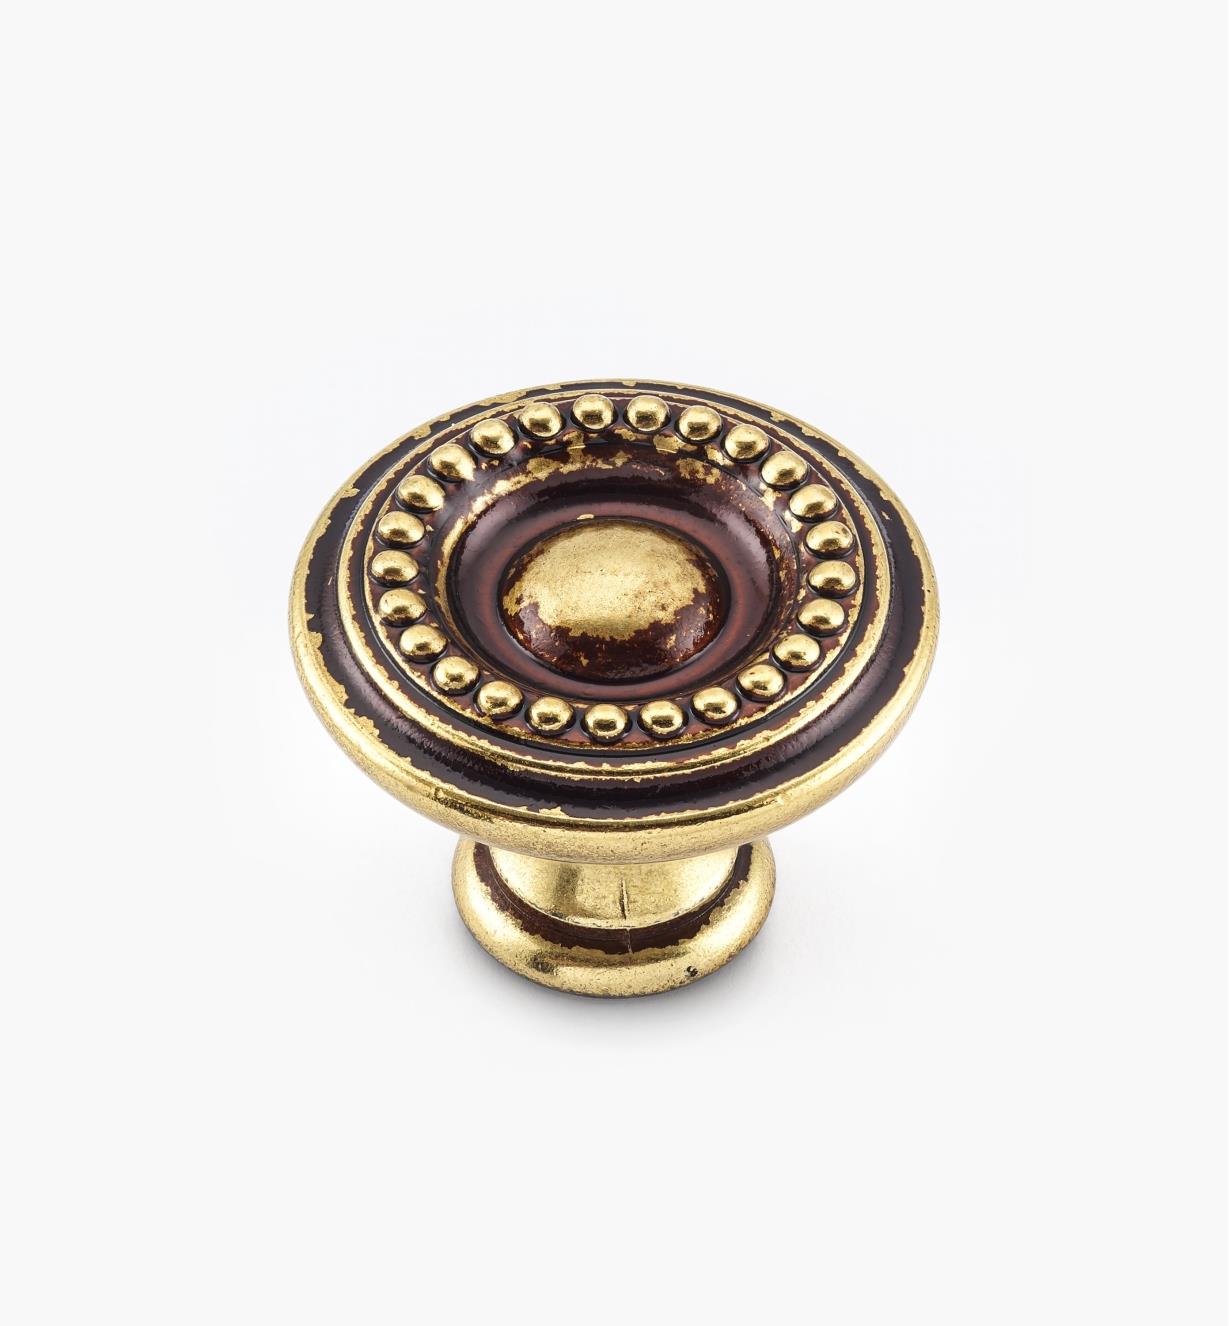 01A7321 - Bouton perlé Louis XVI, fini bronze antique, 30 mm x 23 mm